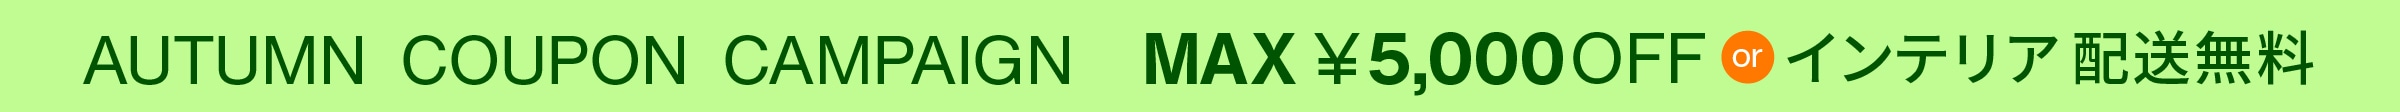 AUTUMN COUPON CAMPAIGN MAX ￥5,000 OFF or インテリア配送無料